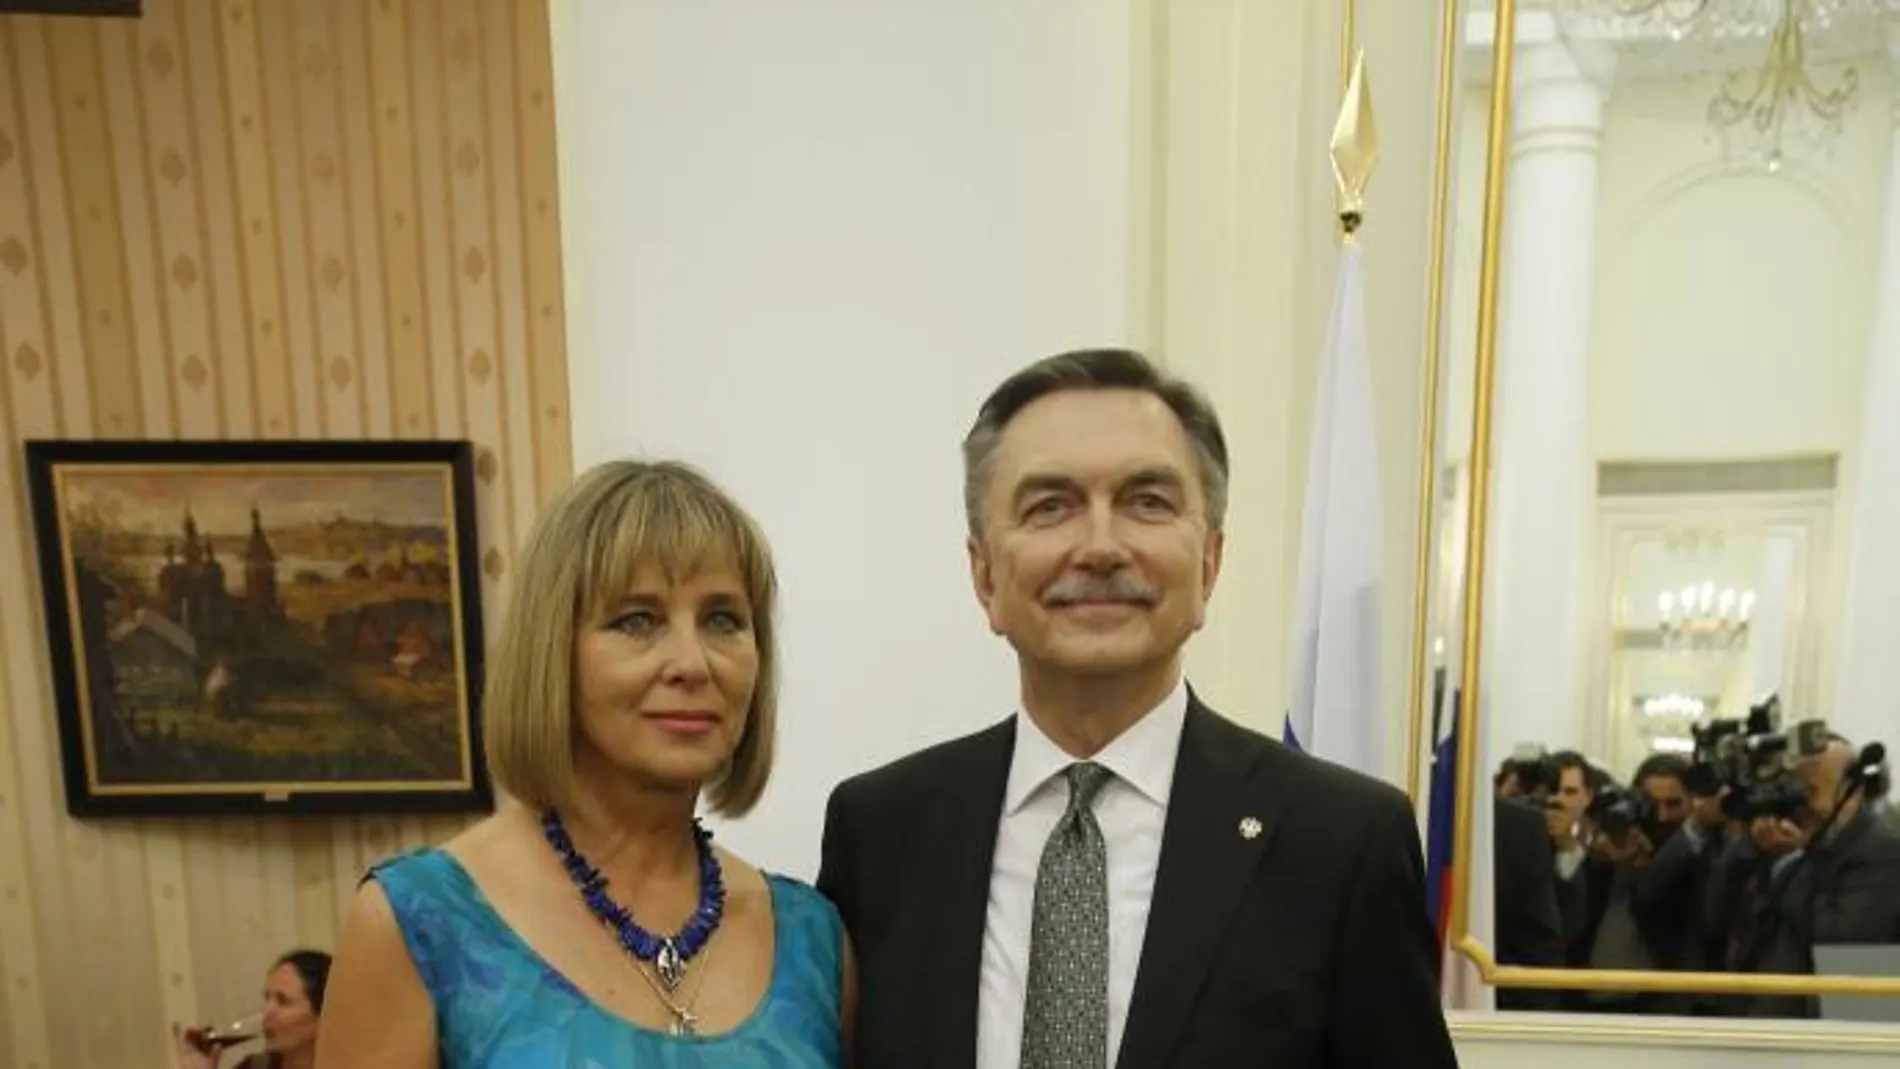 El embajador de la Federación de Rusia en España, don Yuri P. Korchagin y su señora Natalia Korchagina, posando para La Razón minutos antes de dar inicio la recepción por el Día Nacional.